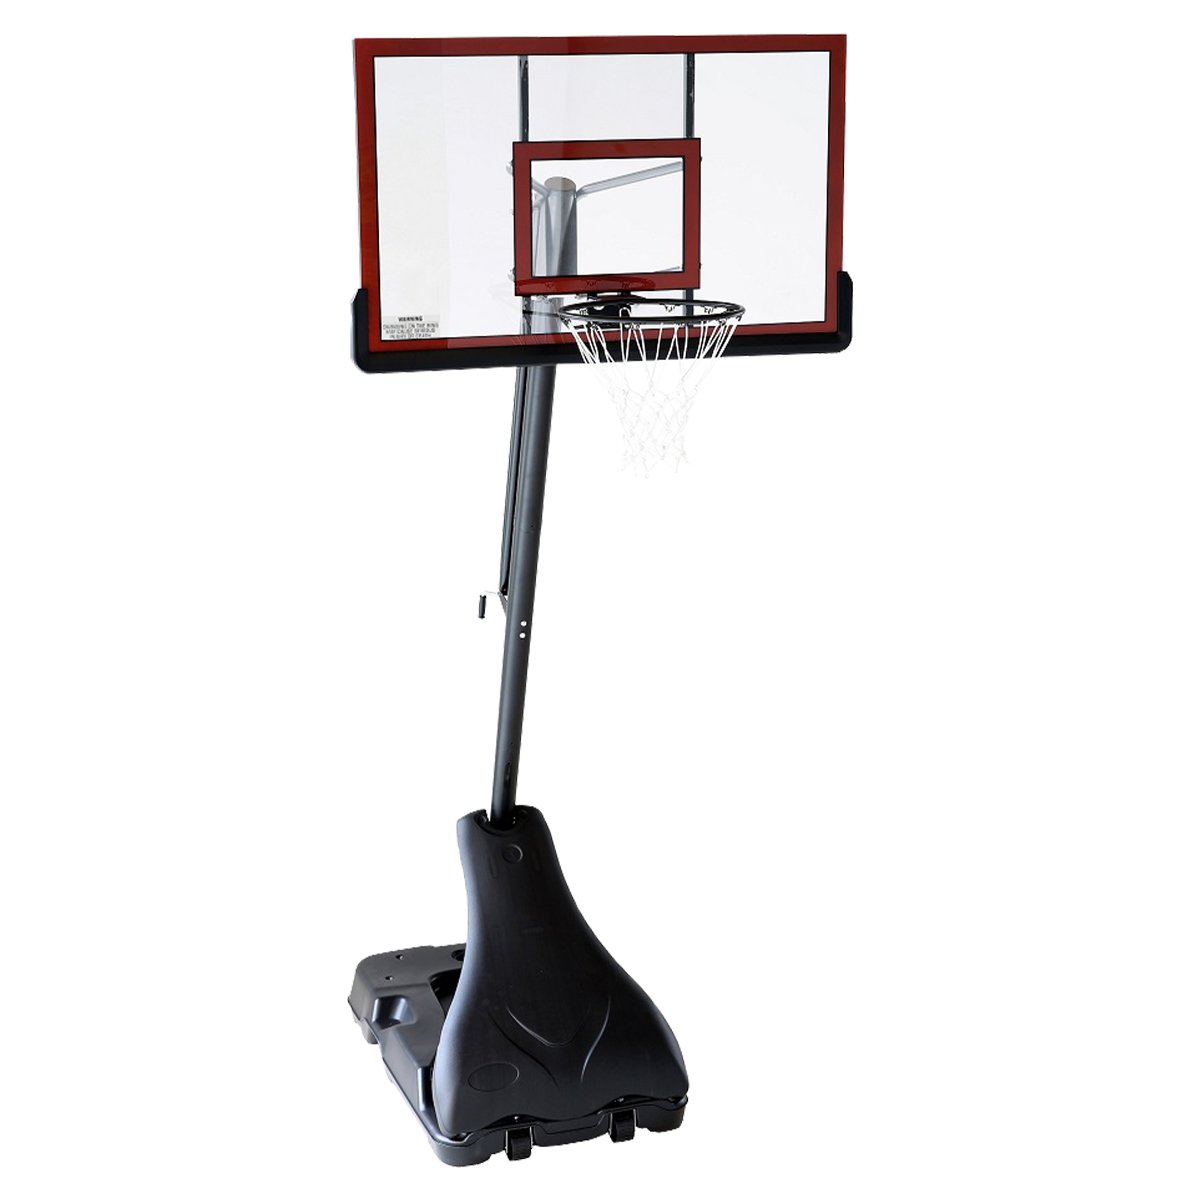 Kahuna Portable Basketball Ring Stand w/ Adjustable Height Ball Holder 2